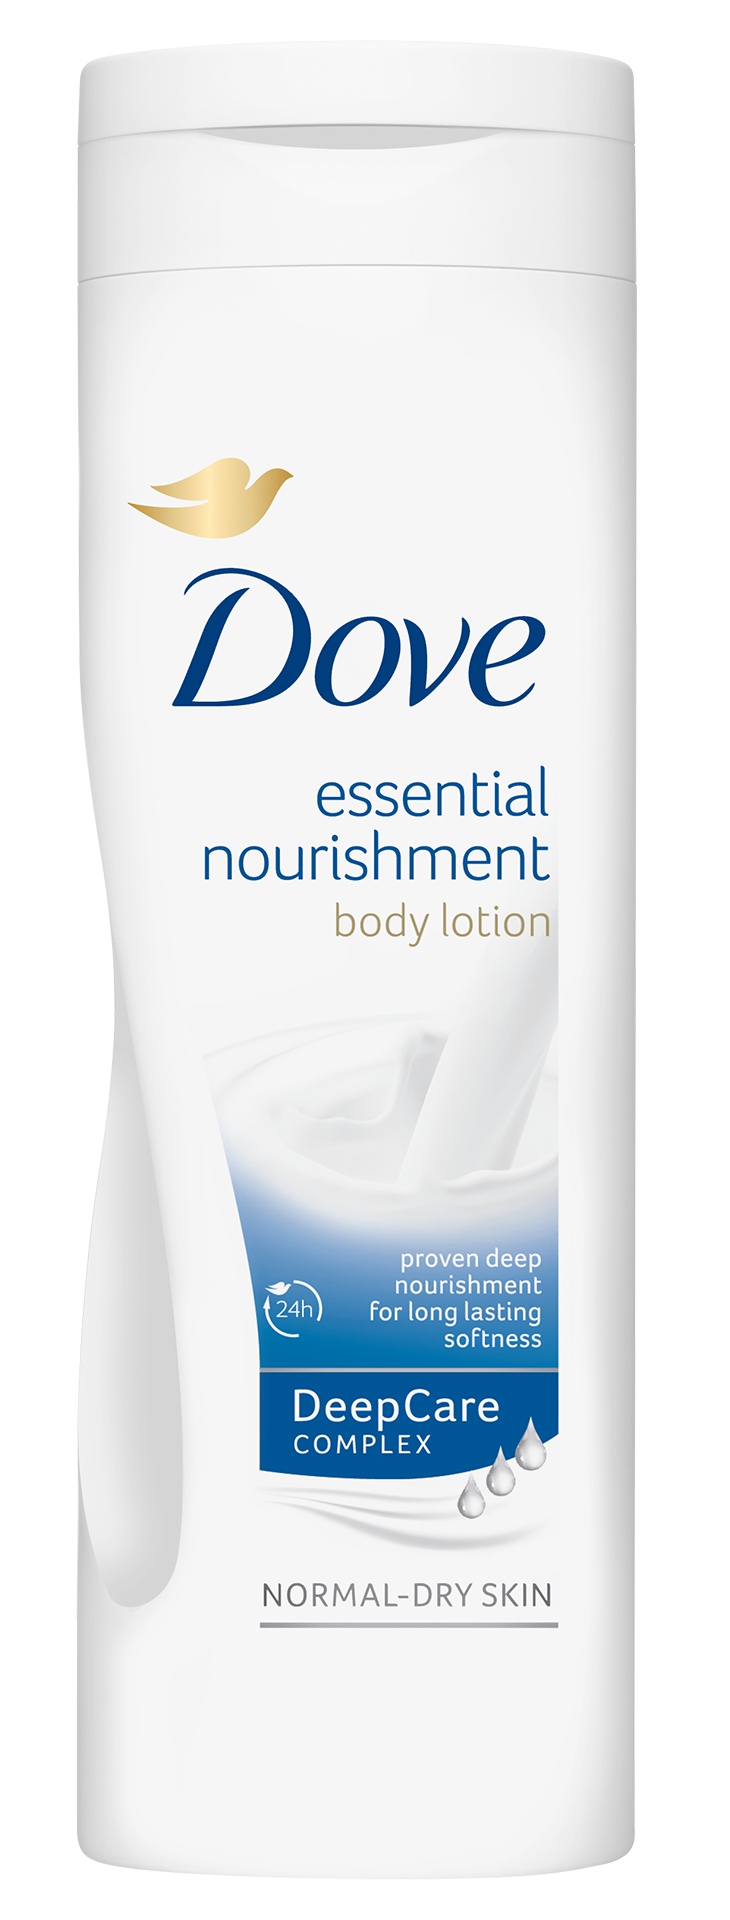 Dove Essential Nourishment Body Lotion